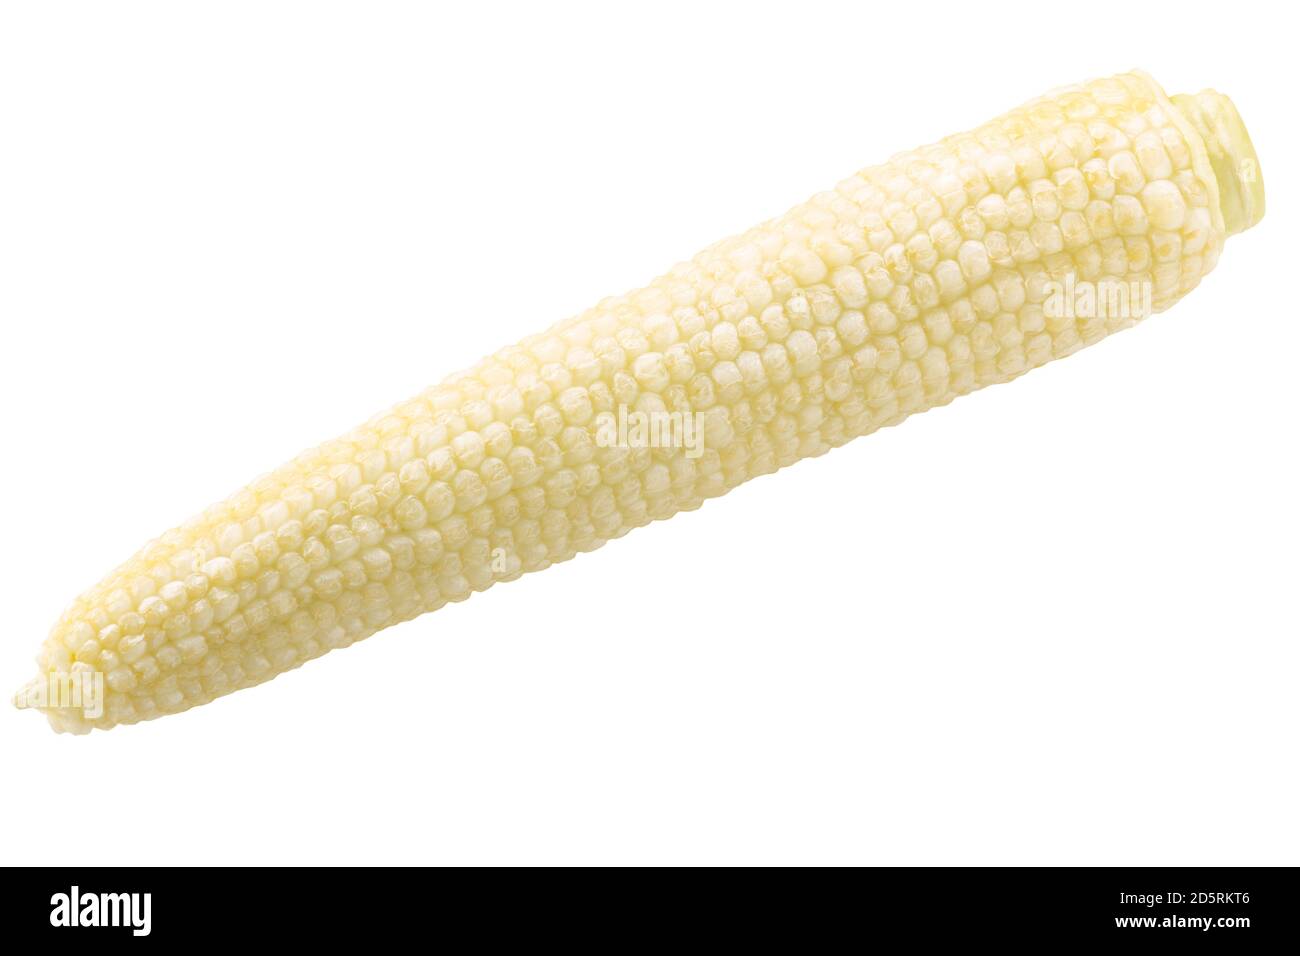 Unreifes geschältes Maiskolben oder Mais, isoliert Stockfoto